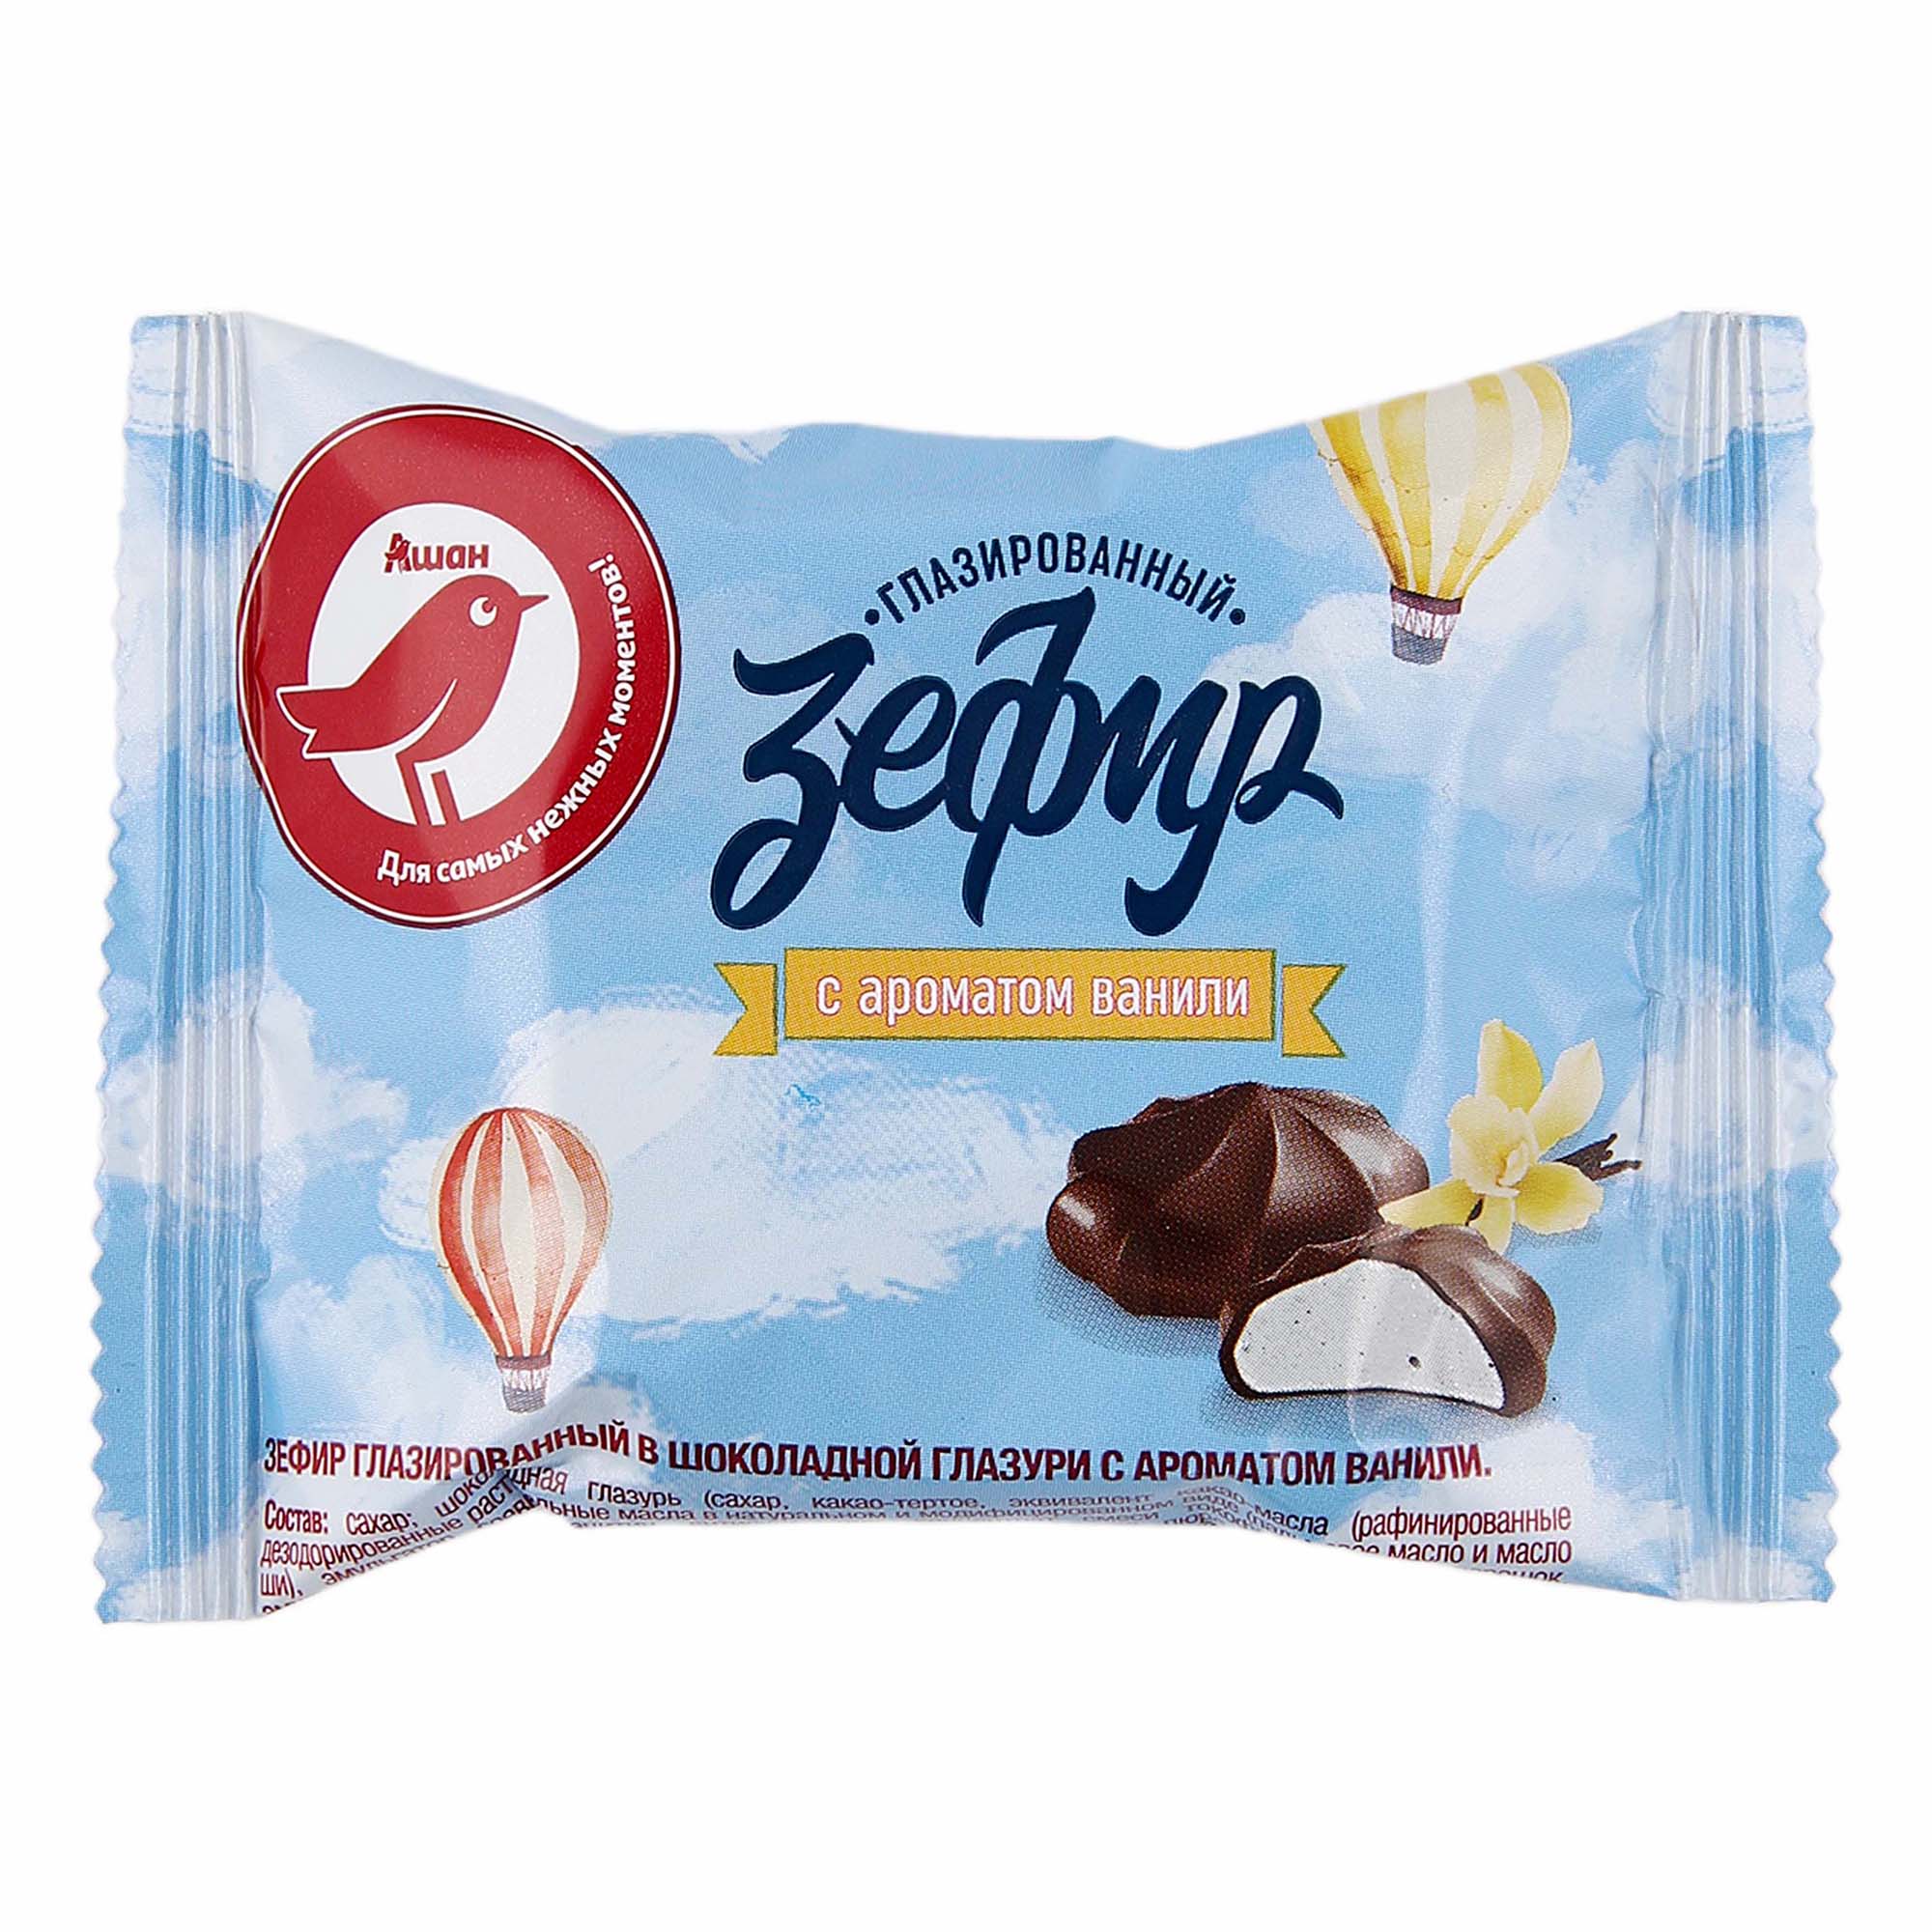 Зефир АШАН Красная птица глазированный в шоколадной глазури с ароматом ванили